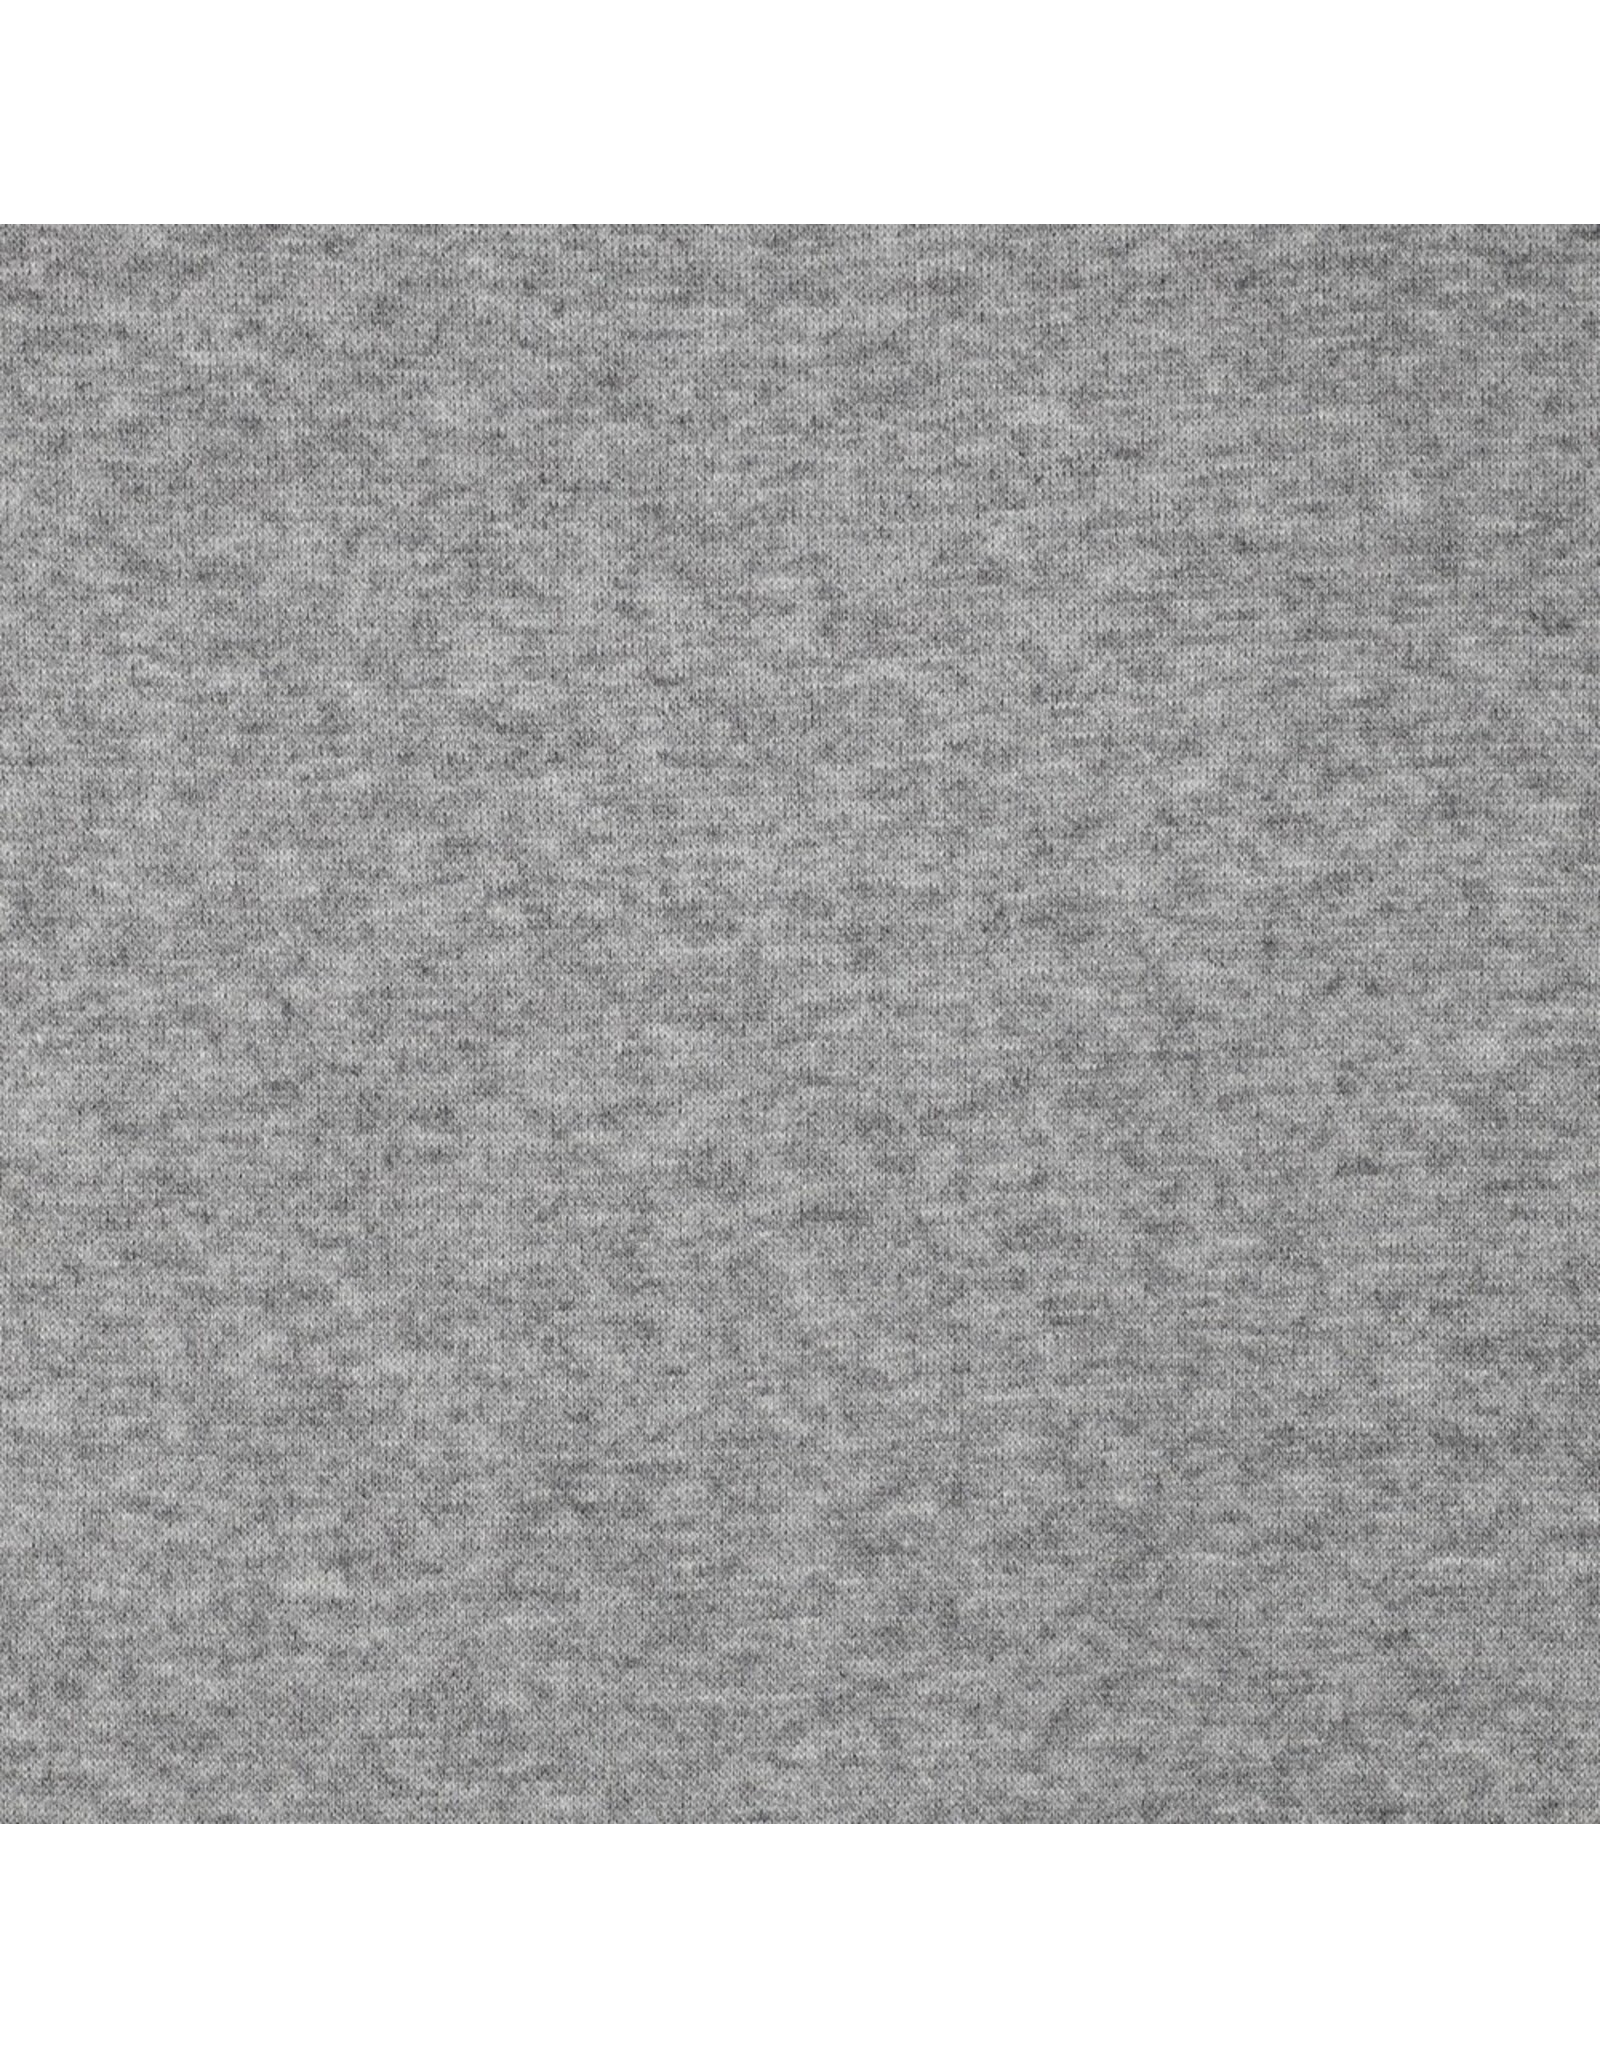 Knitted Melange grey